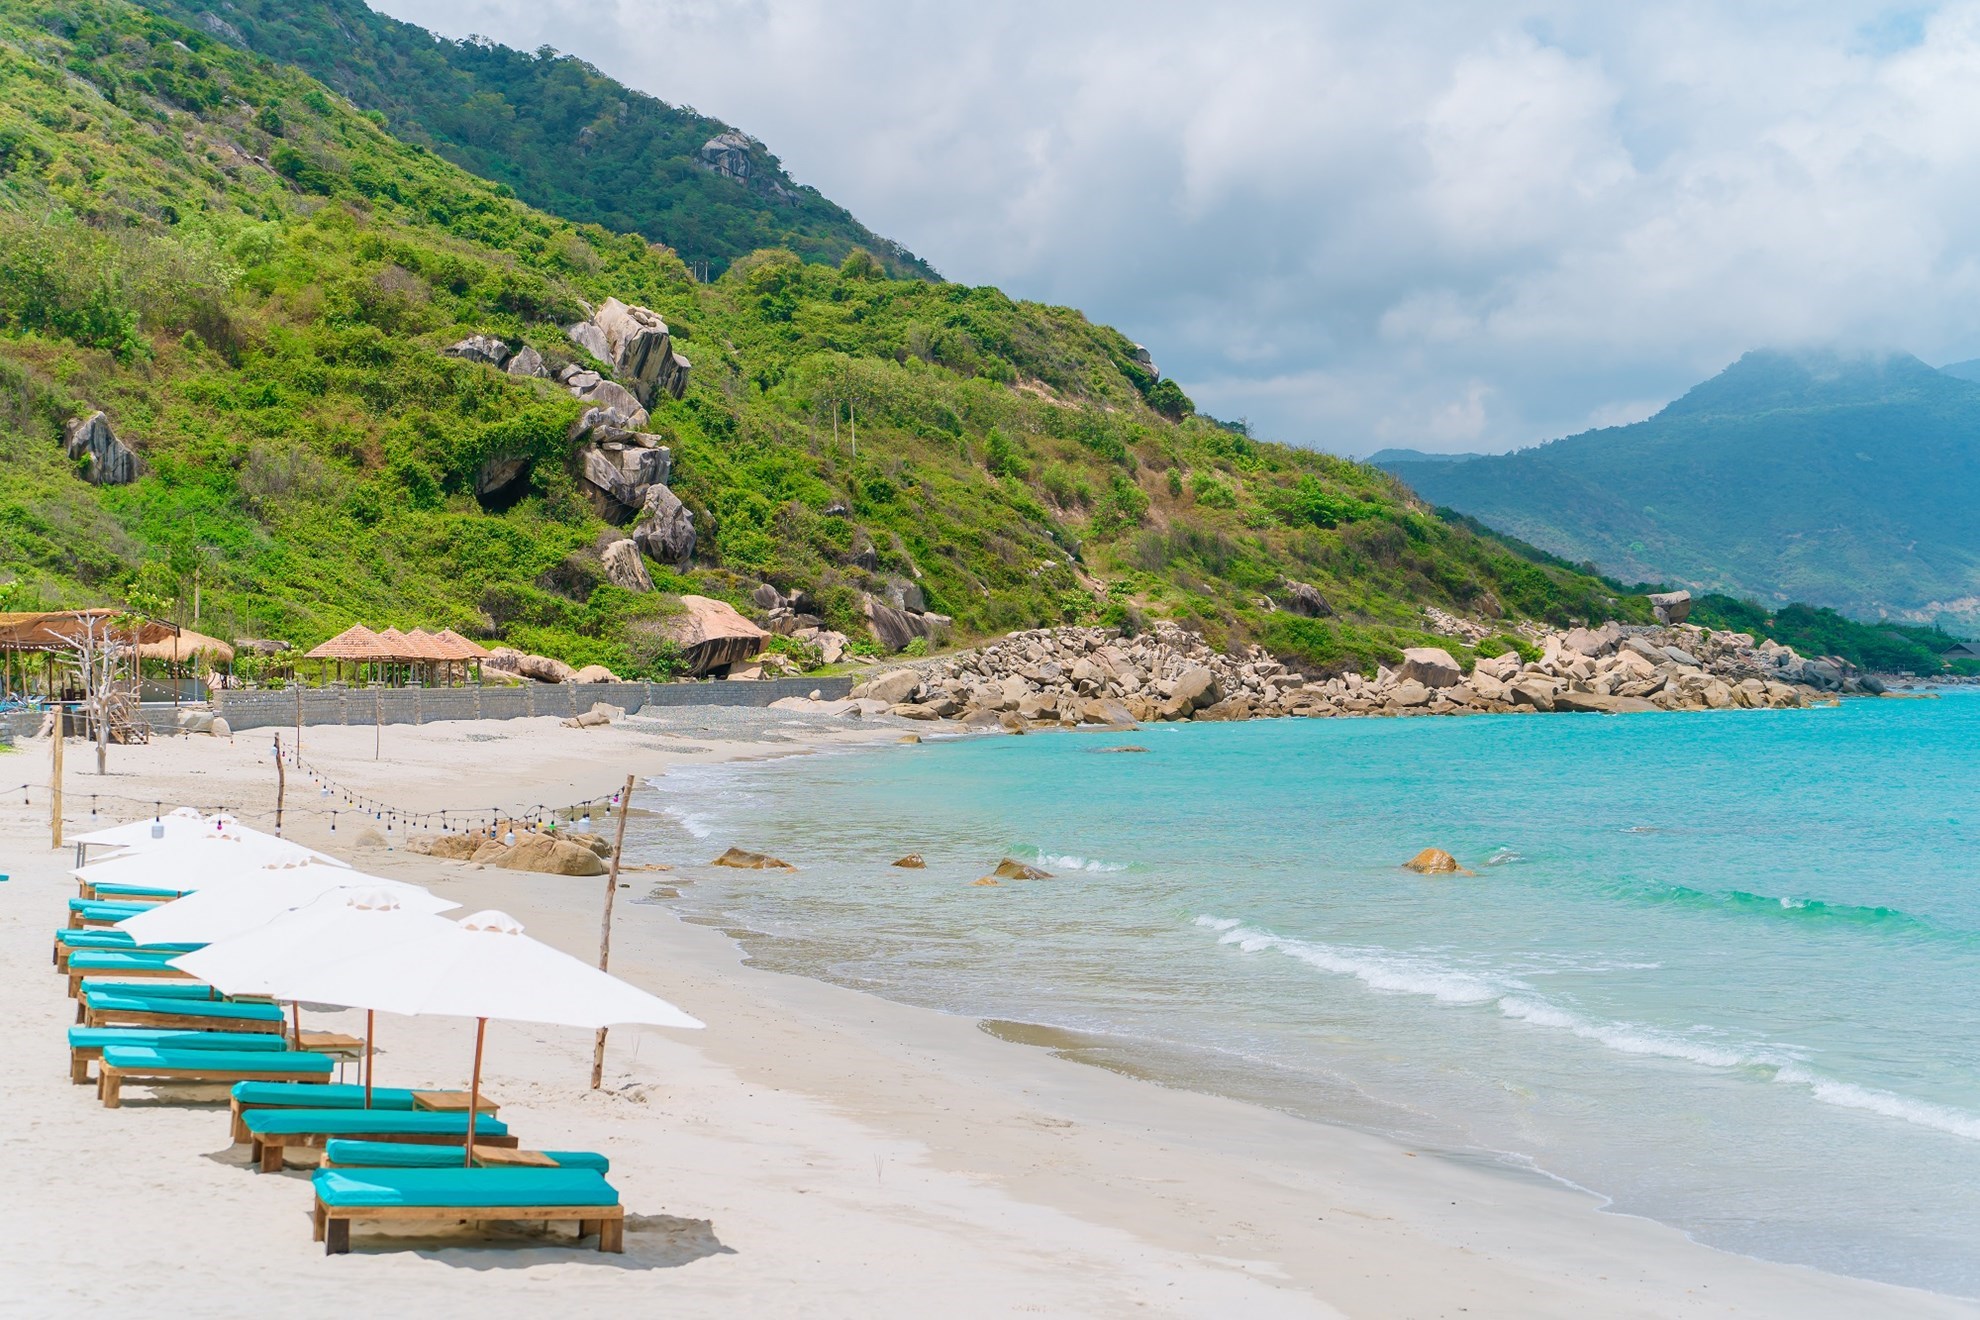 Phát hiện bãi biển ít lên quảng cáo chỉ cách Nha Trang 60km, mệnh danh là “thủ phủ” của loạt resort 5 sao - ảnh 4